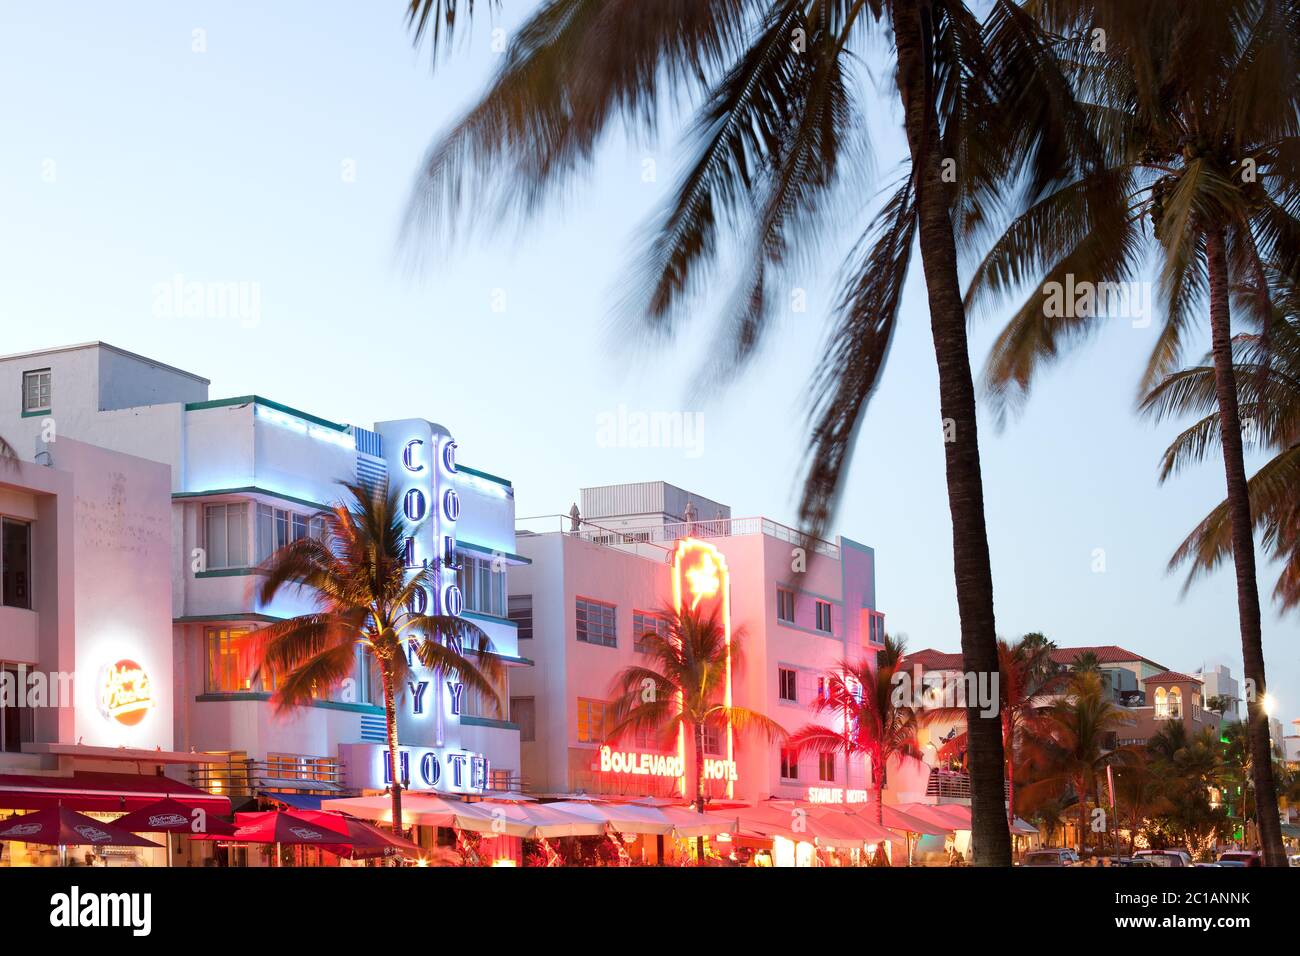 South Beach, Miami, Florida, Vereinigte Staaten - Hotels, Bars und Restaurants am Ocean Drive im berühmten Art-Deco-Viertel. Stockfoto